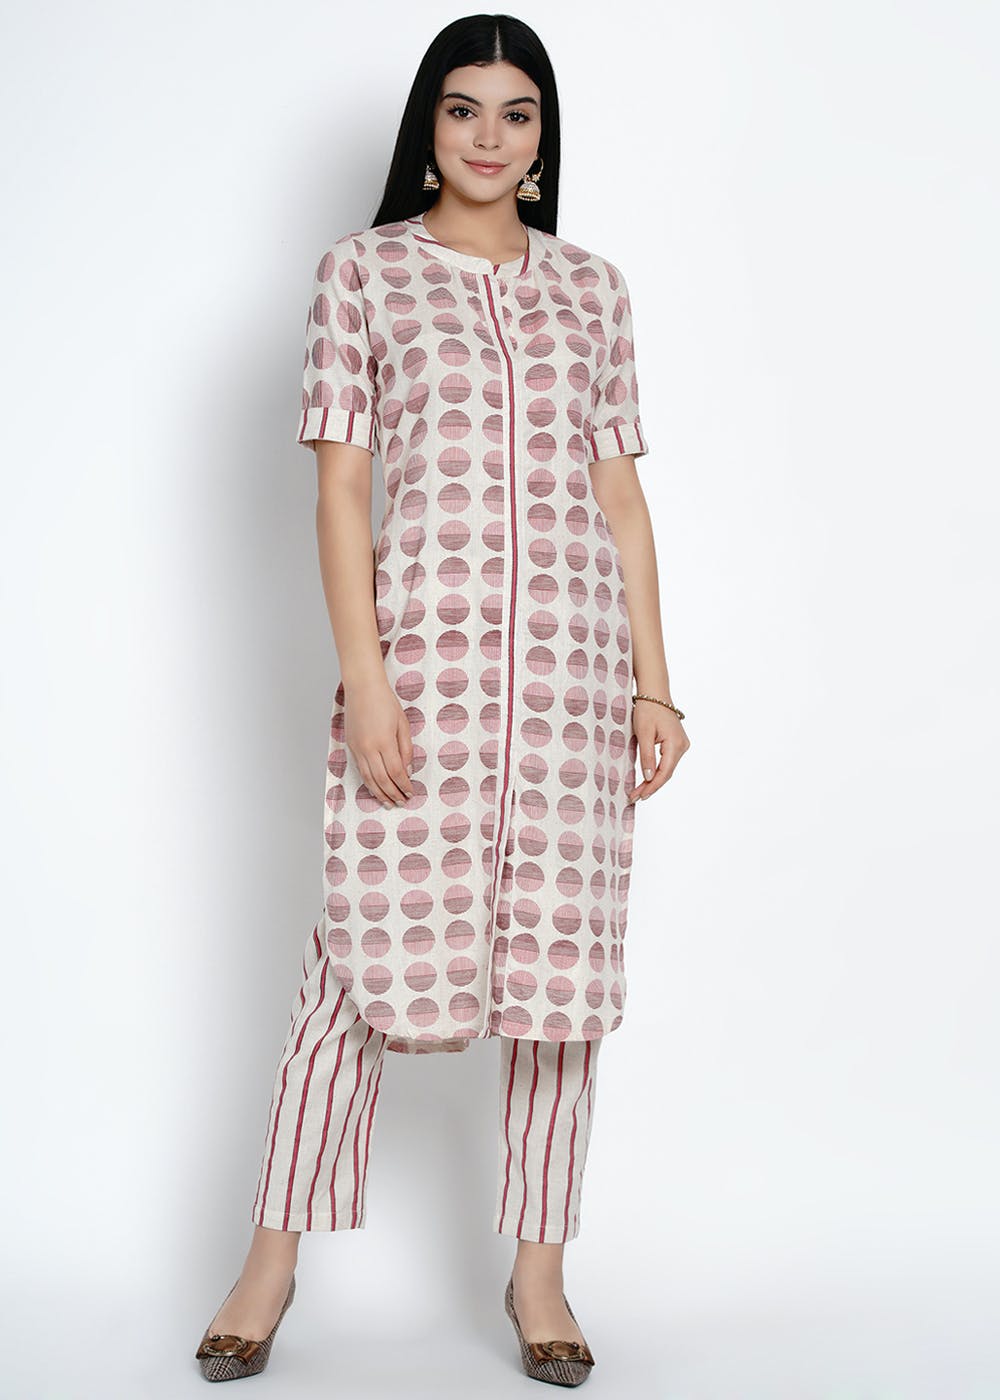 Ladies Cotton Kurti Pant Set, Size: M, 250 Gsm at Rs 5370/set in Surat |  ID: 25923835373